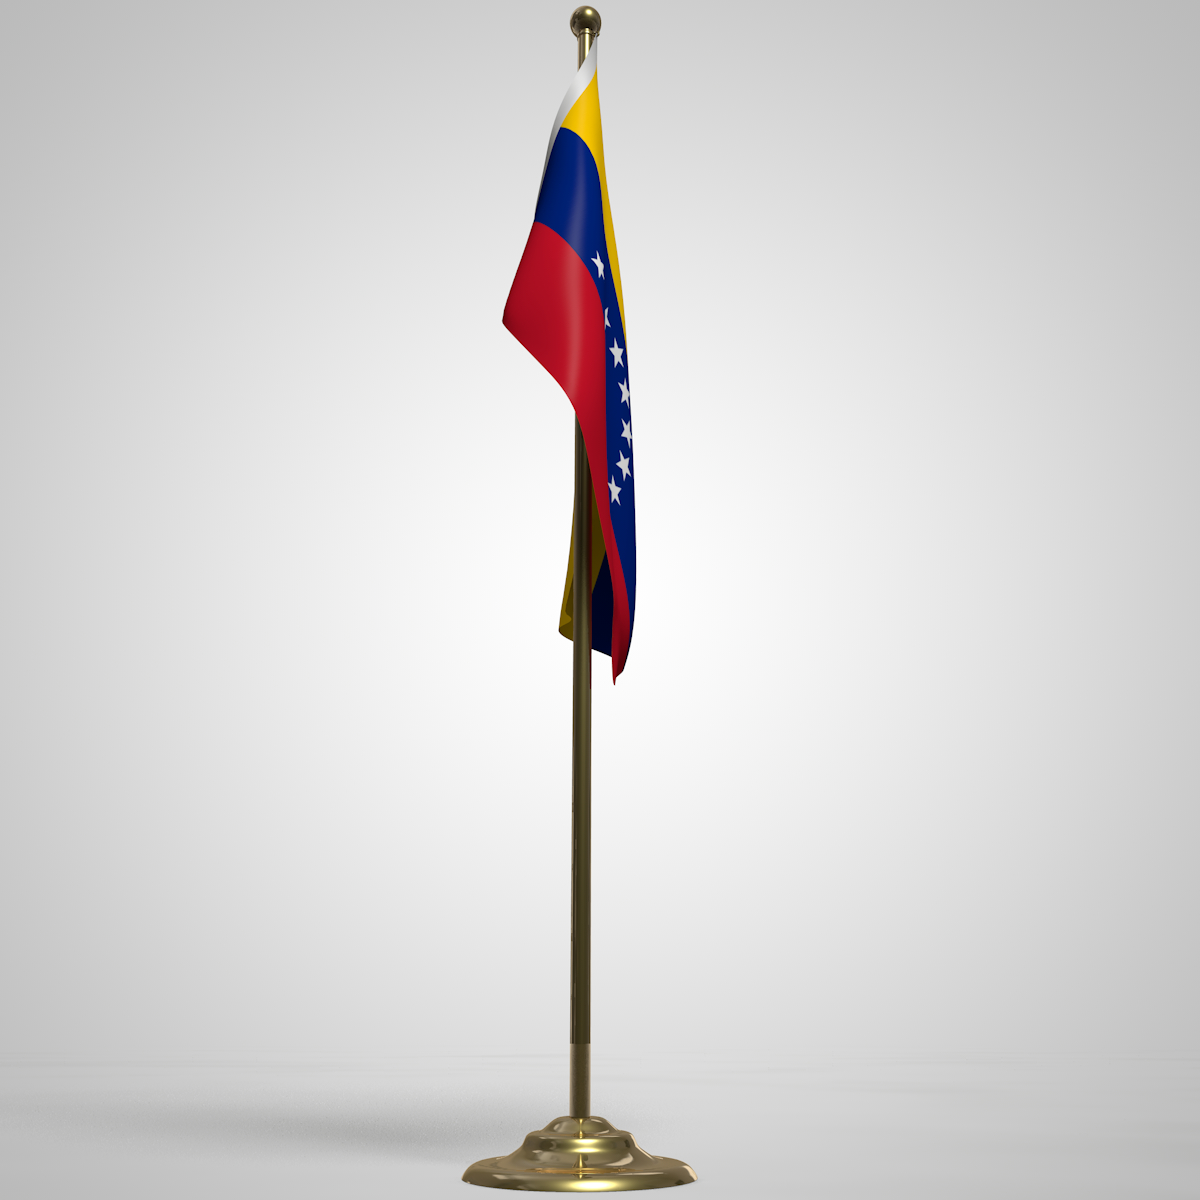 委内瑞拉国旗发展史_高清委内瑞拉的国旗 - 随意云